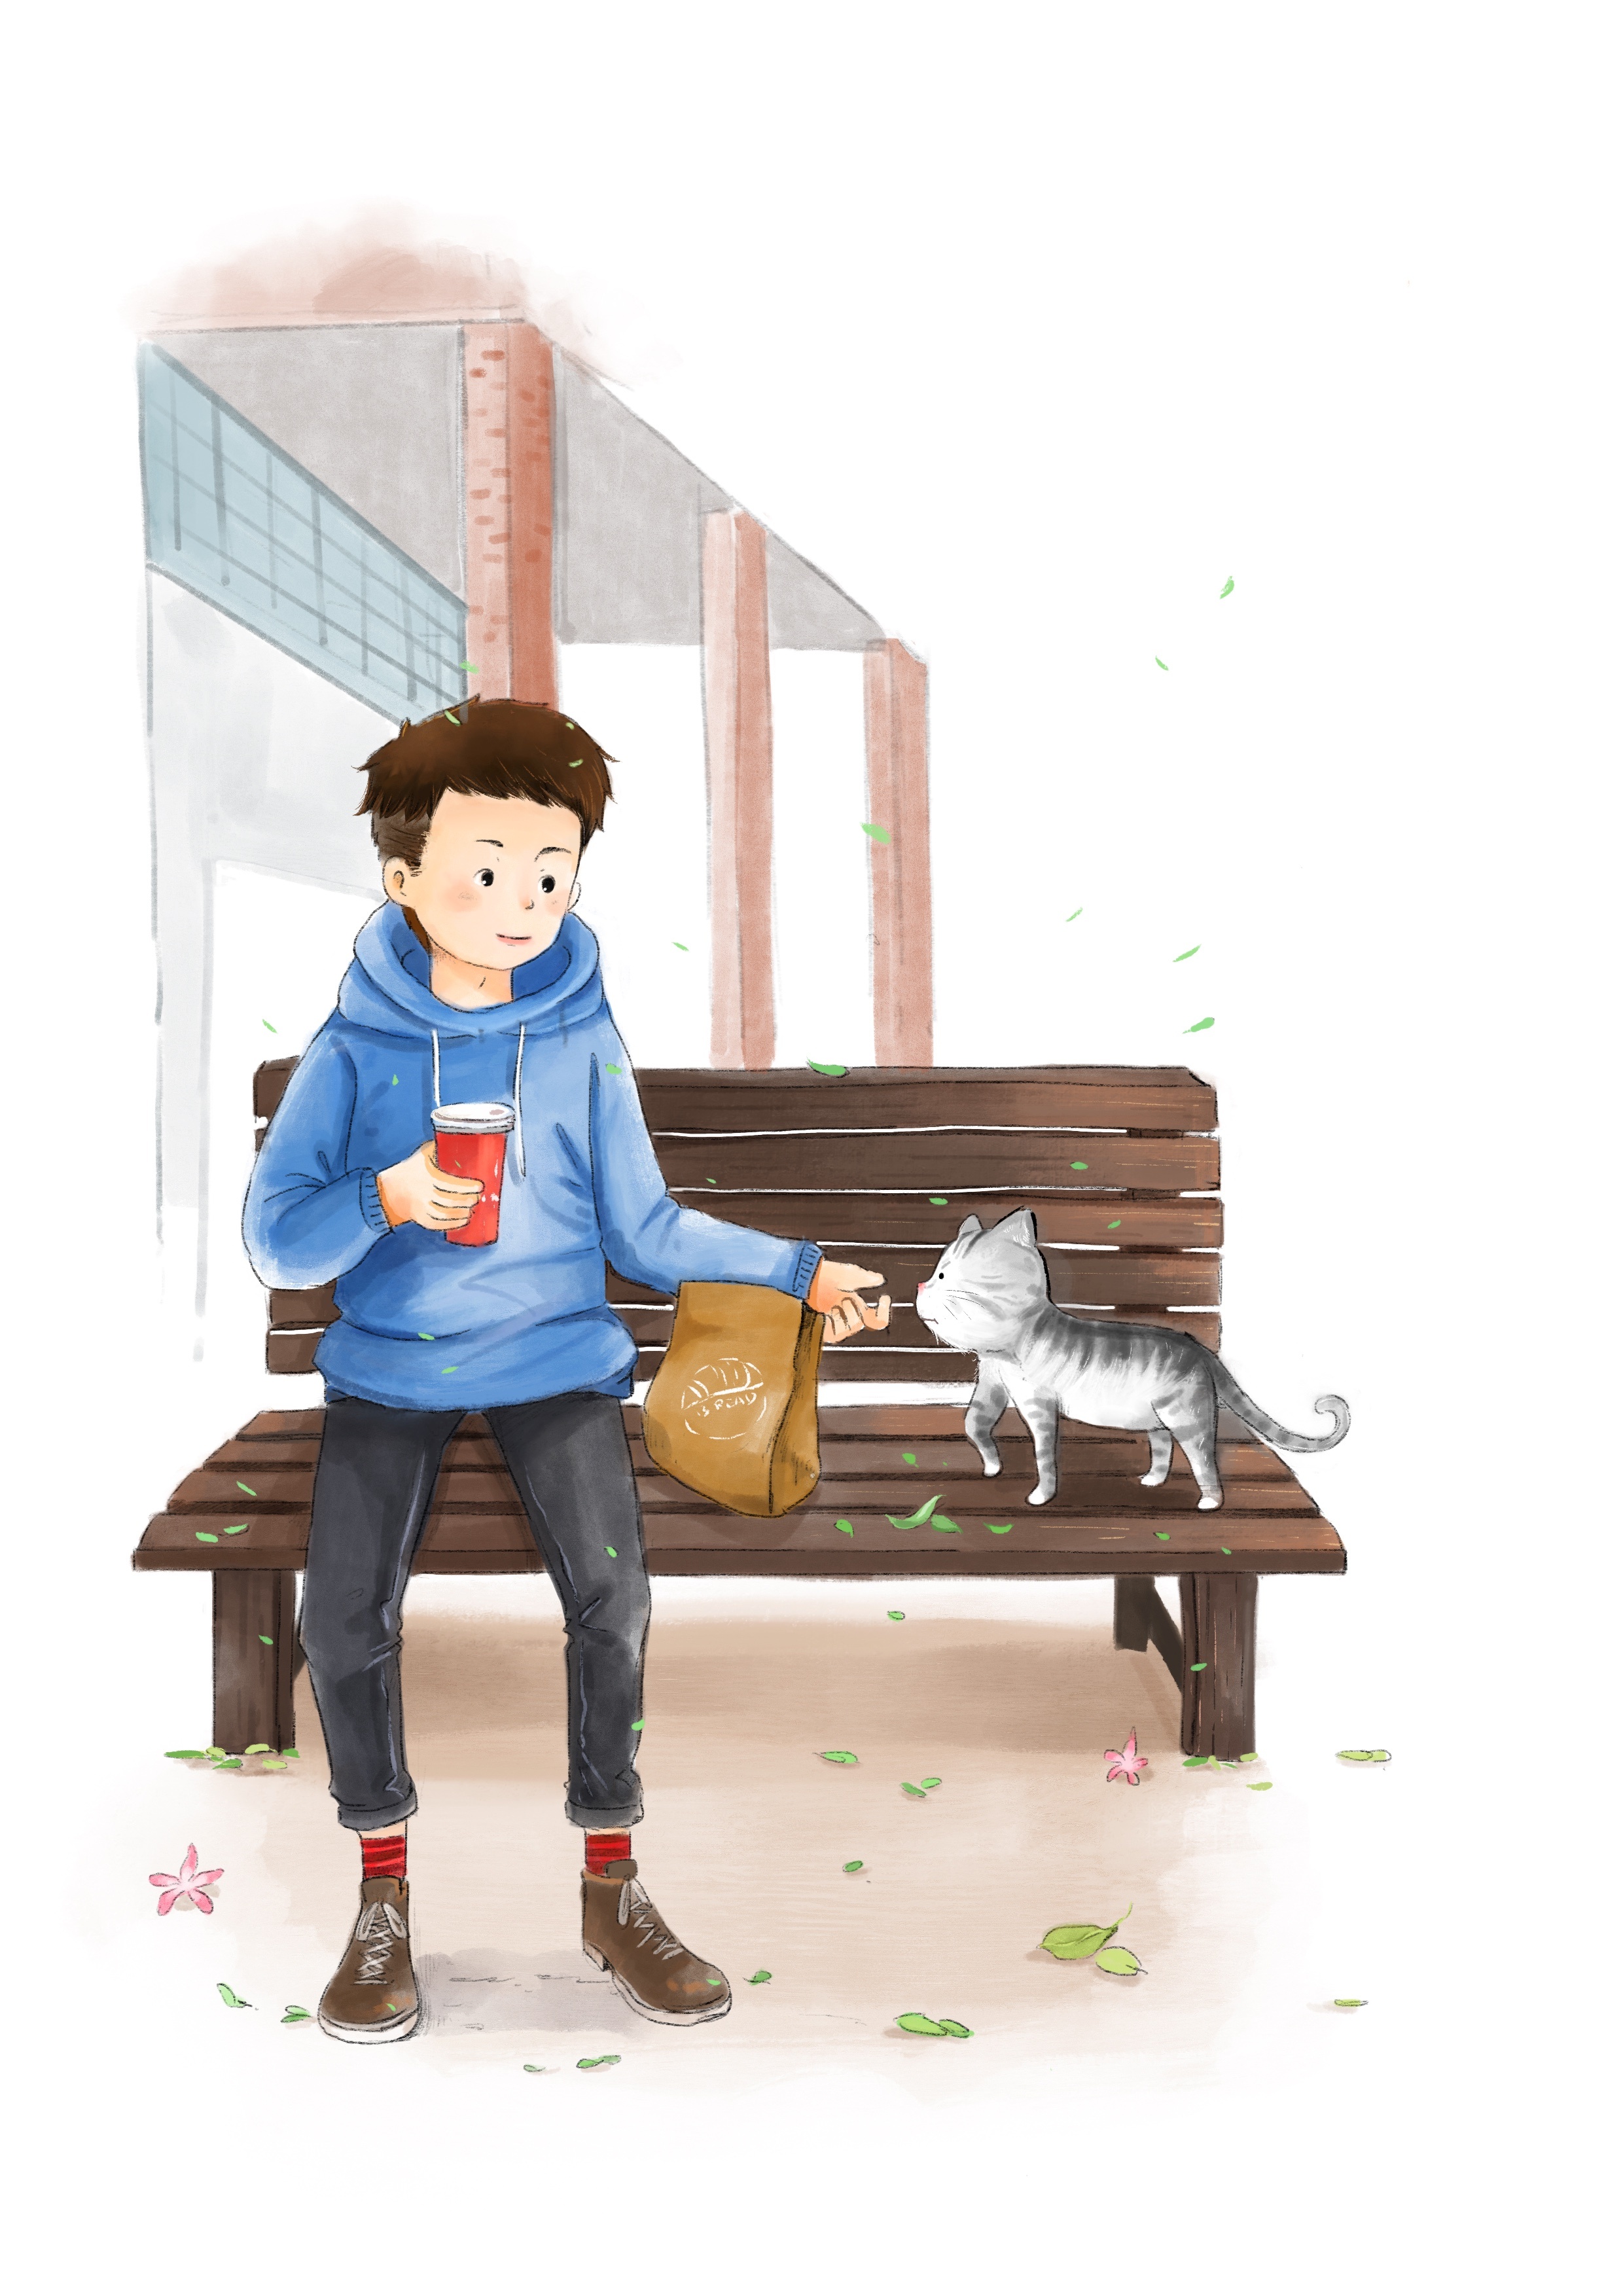 可爱的小男孩和他的小猫!图片-商业图片-正版原创图片下载购买-VEER图片库